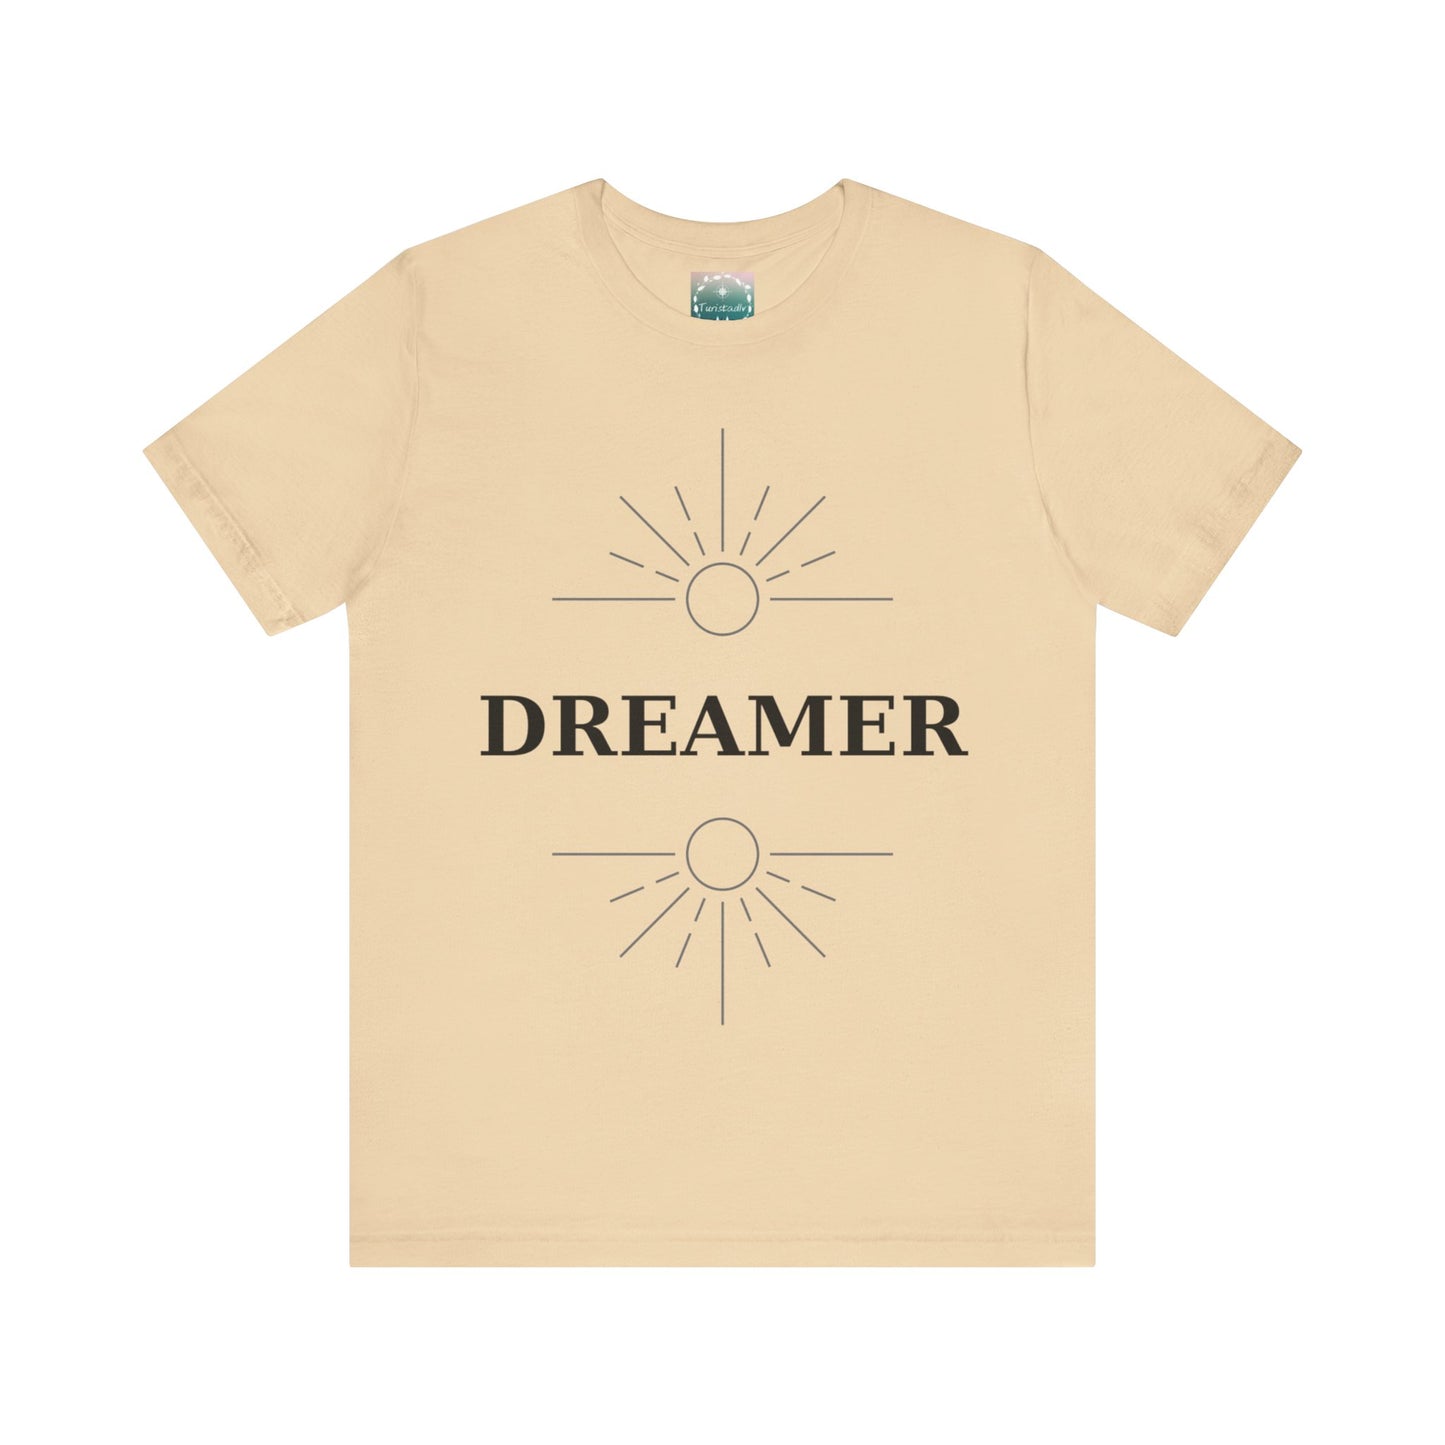 Camiseta de soñador, camiseta de viajero, camiseta inspiradora, camiseta de viaje, regalo de viaje, camiseta de sueños, regalo de nómadas